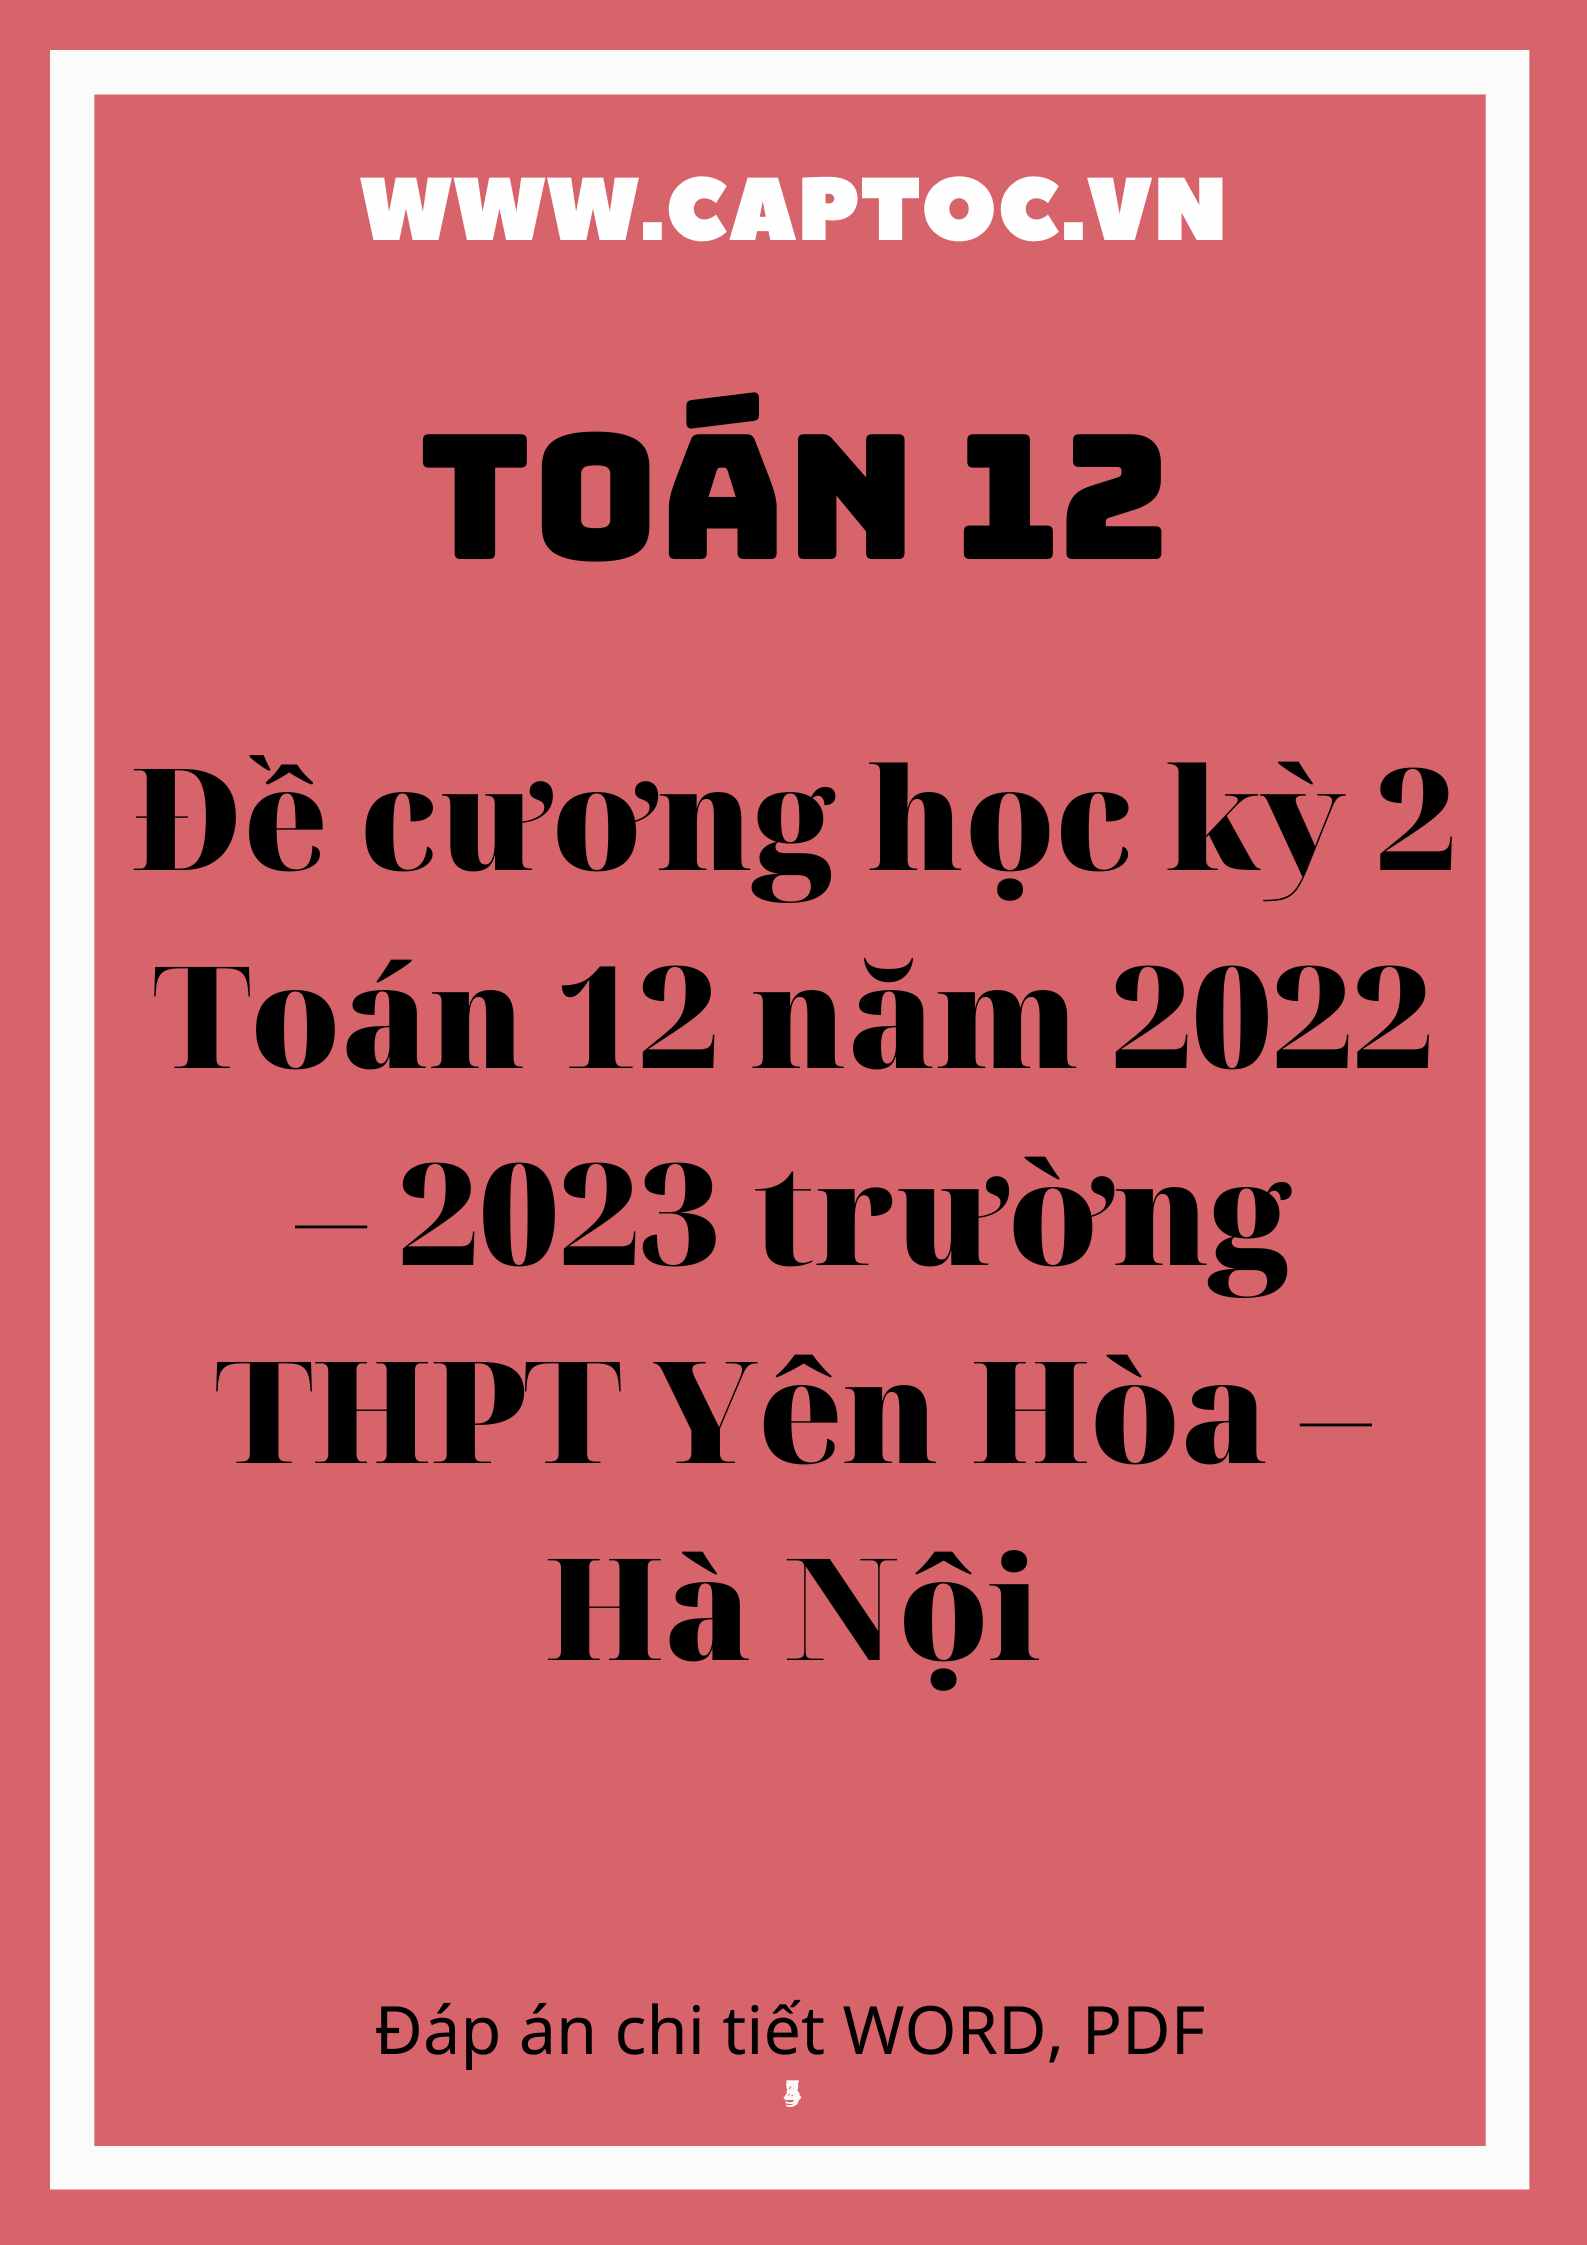 Đề cương học kỳ 2 Toán 12 trường THPT Yên Hòa – Hà Nội